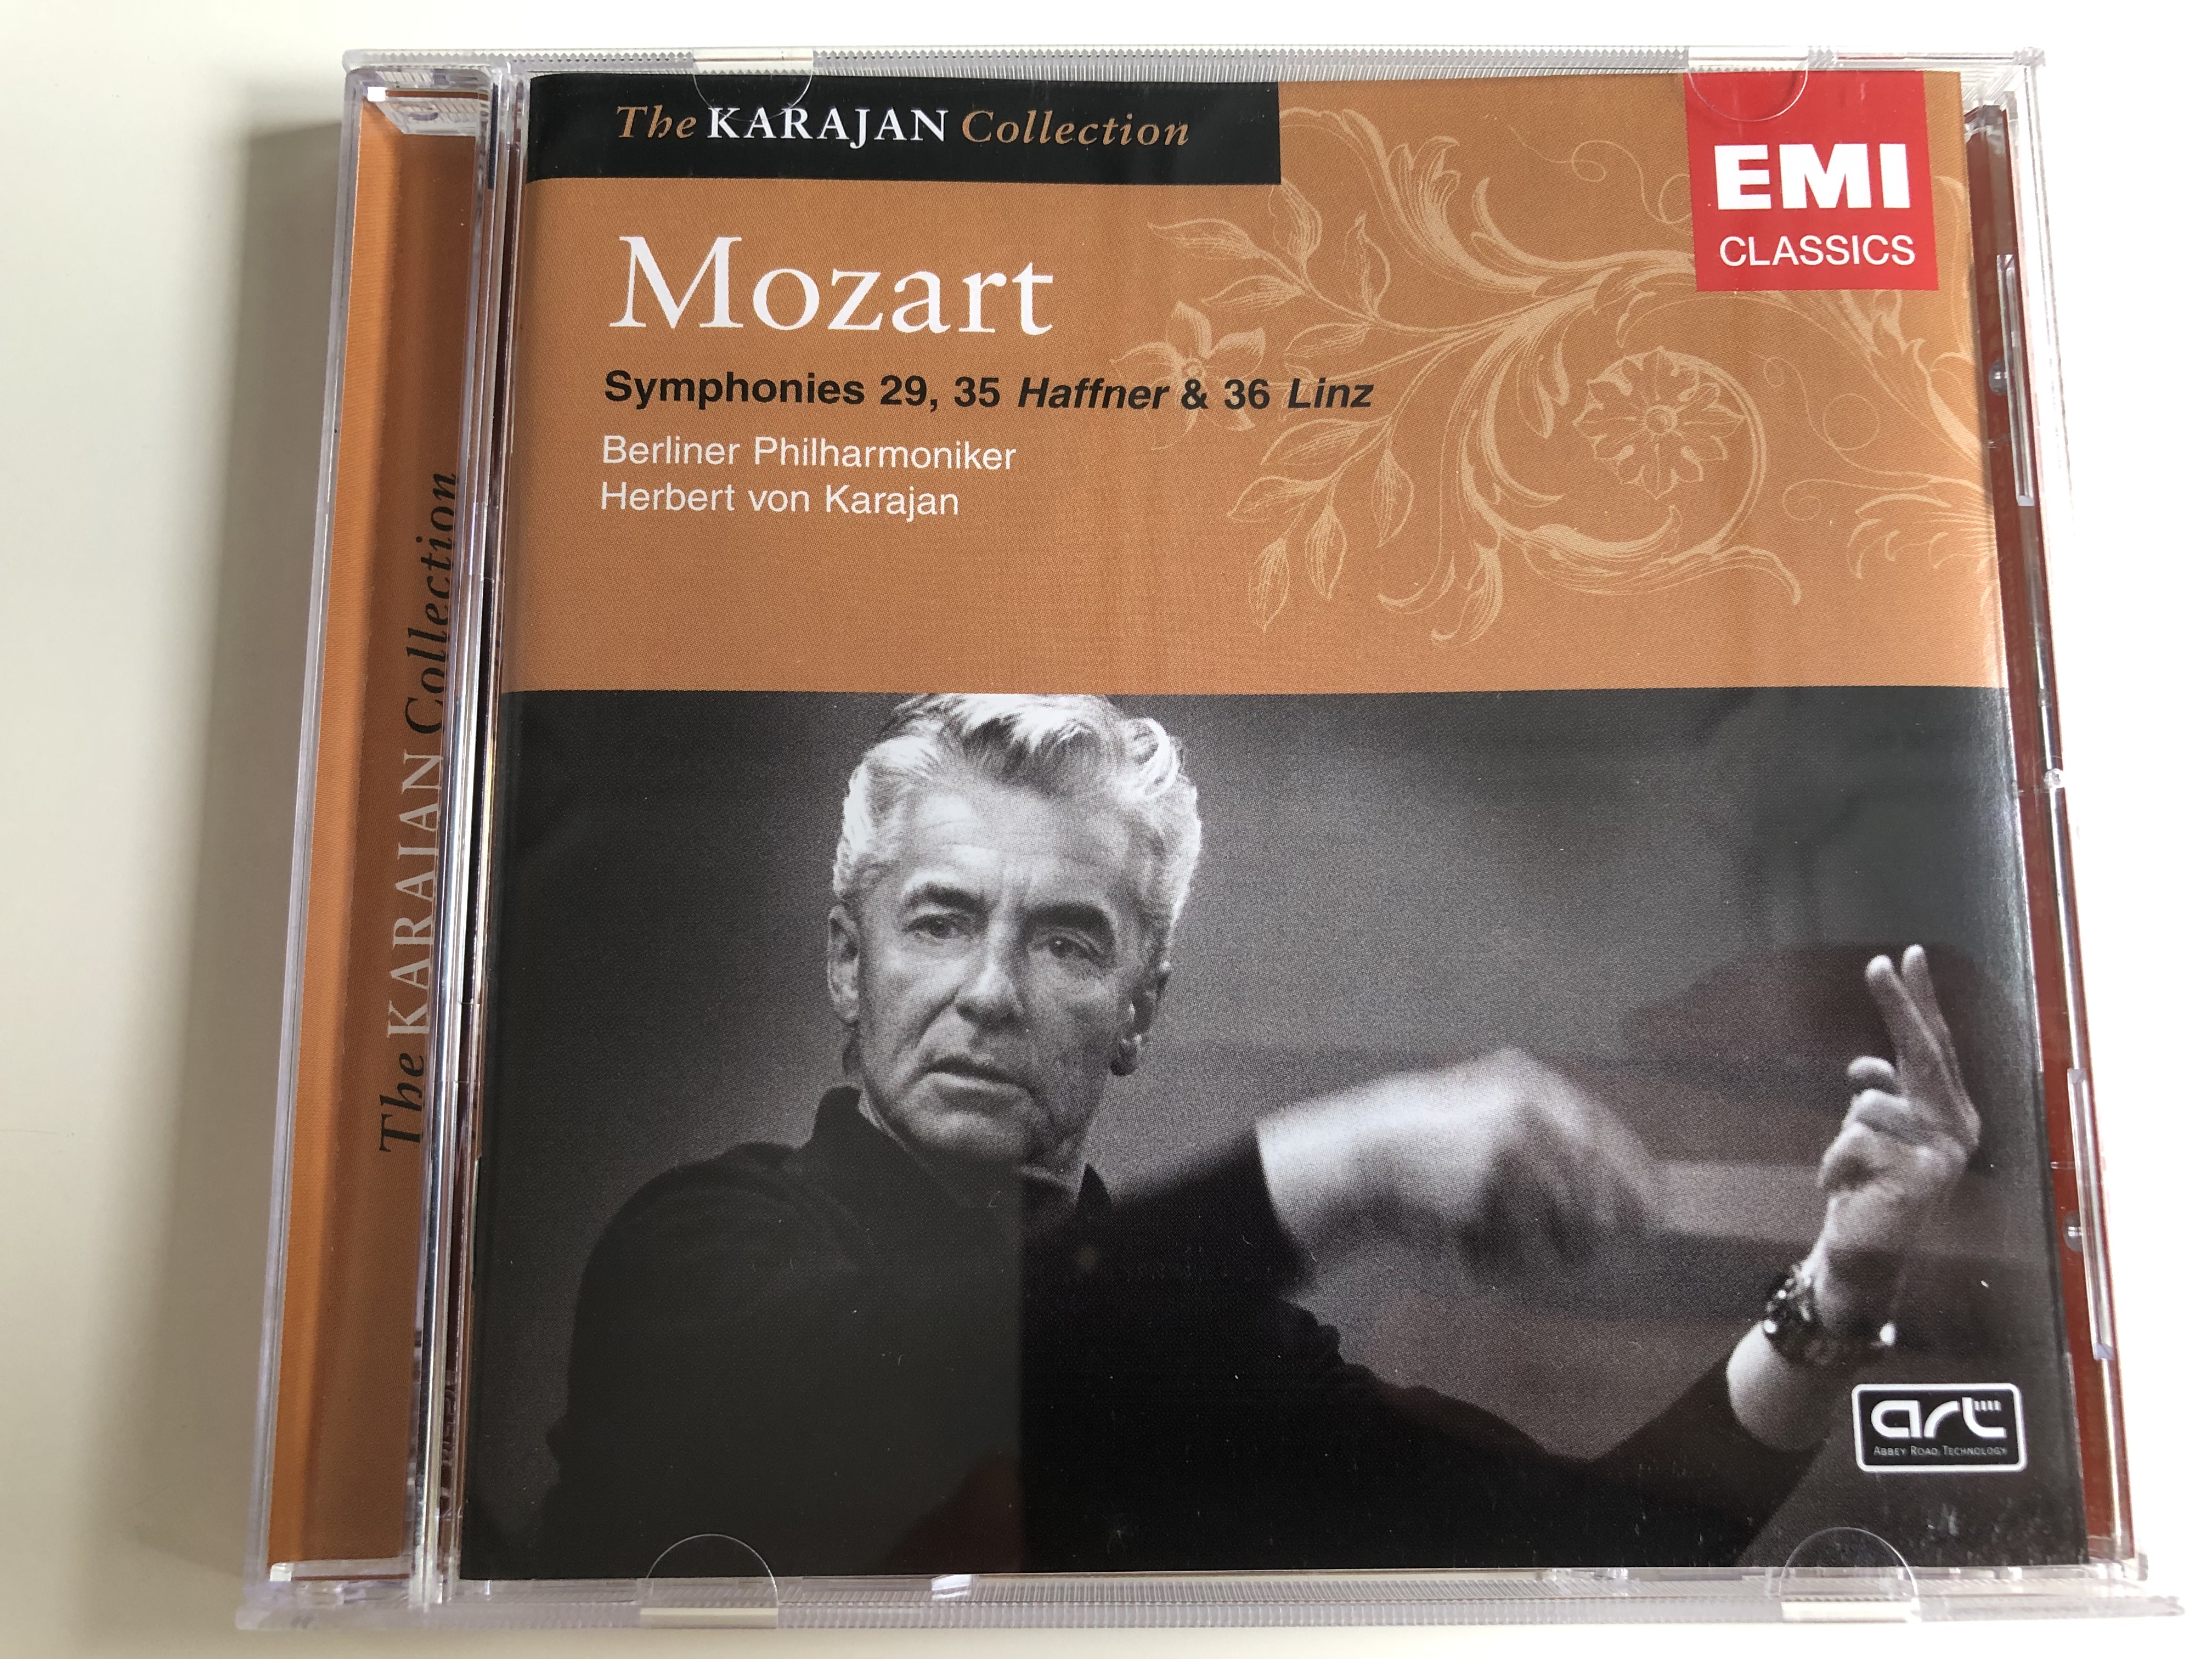 mozart-symphonies-29-35-haffner-36-linz-berliner-philharmoniker-conducted-by-herbert-von-karajan-emi-classics-the-karajan-collection-audio-cd-2005-1-.jpg